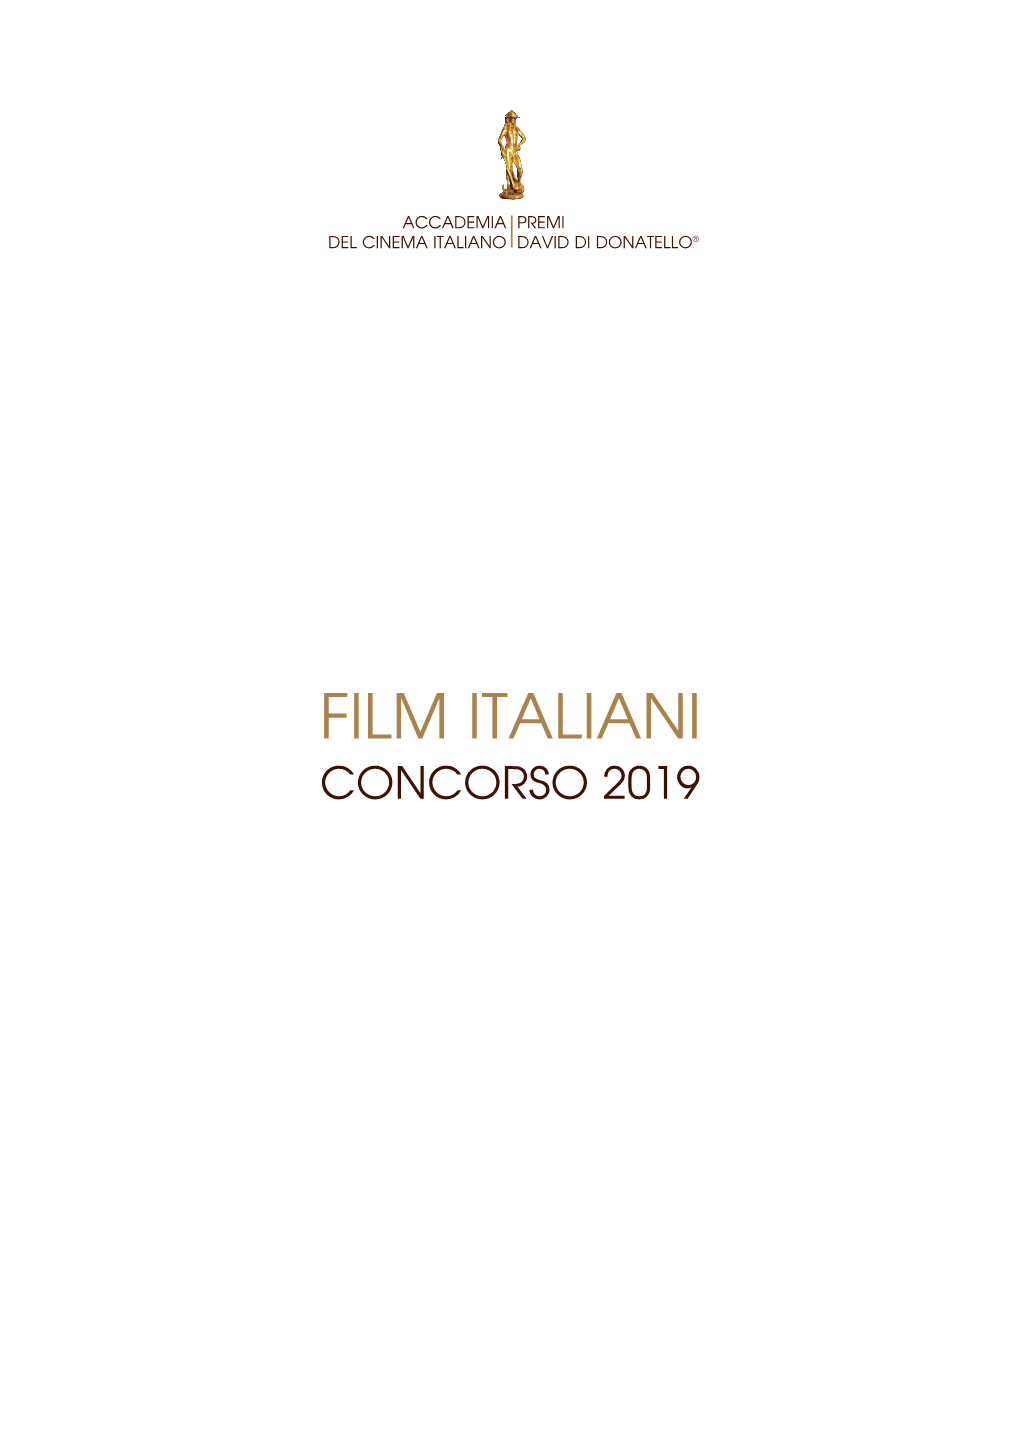 FILM ITALIANI CONCORSO 2019 Impaginato 2019 Def 03.Qxp Sezioni 02/01/19 11:18 Pagina 3